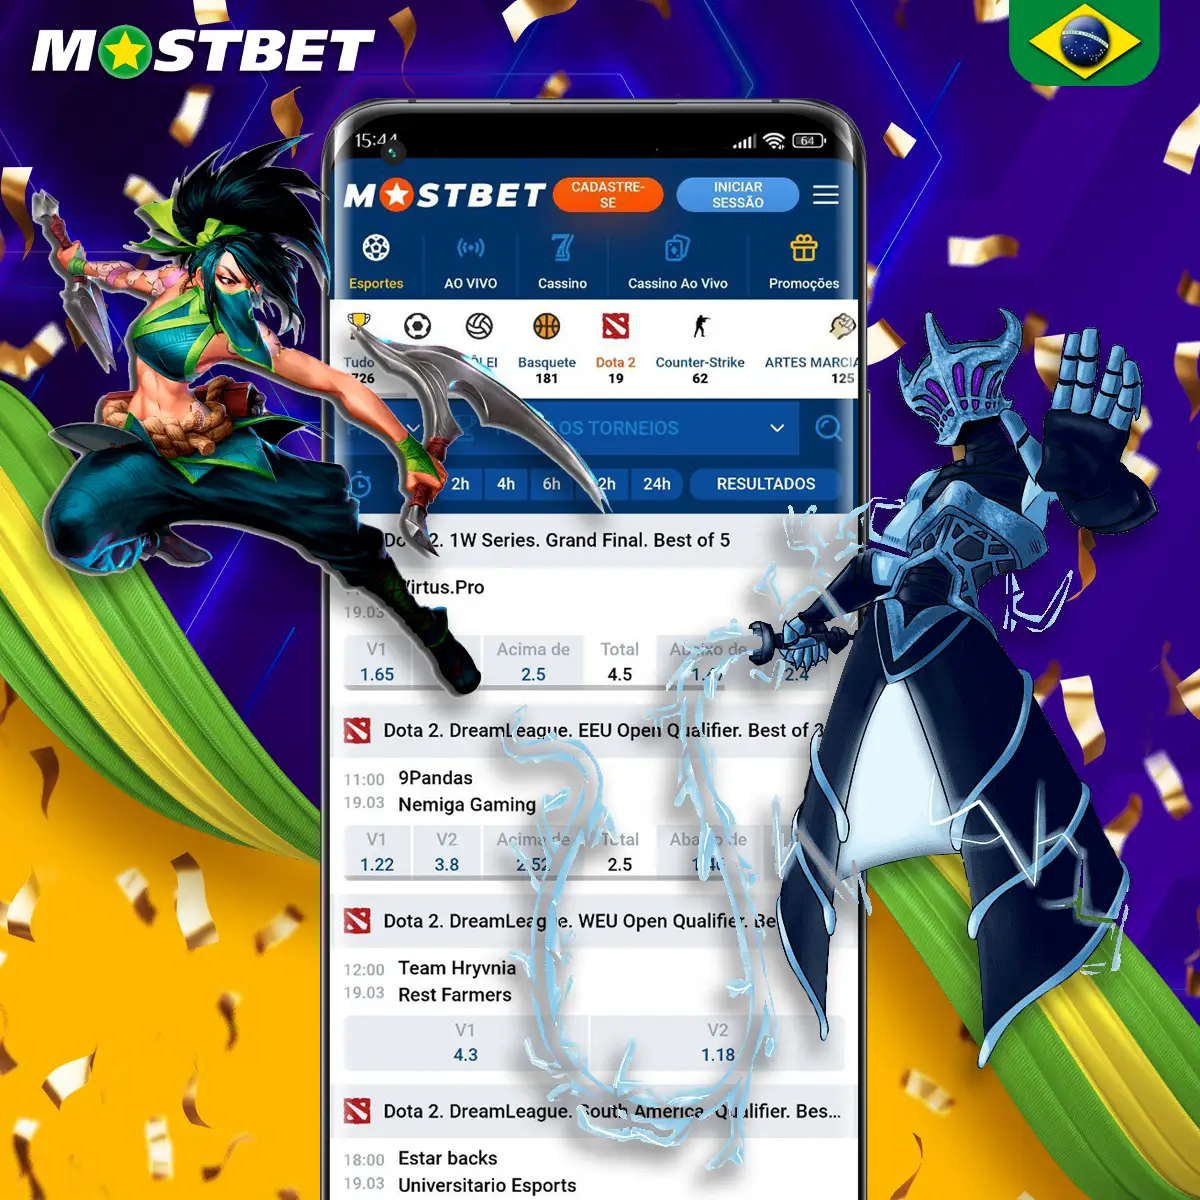 Opções de apostas em e-Sportes eletrônicos na plataforma Mostbet.